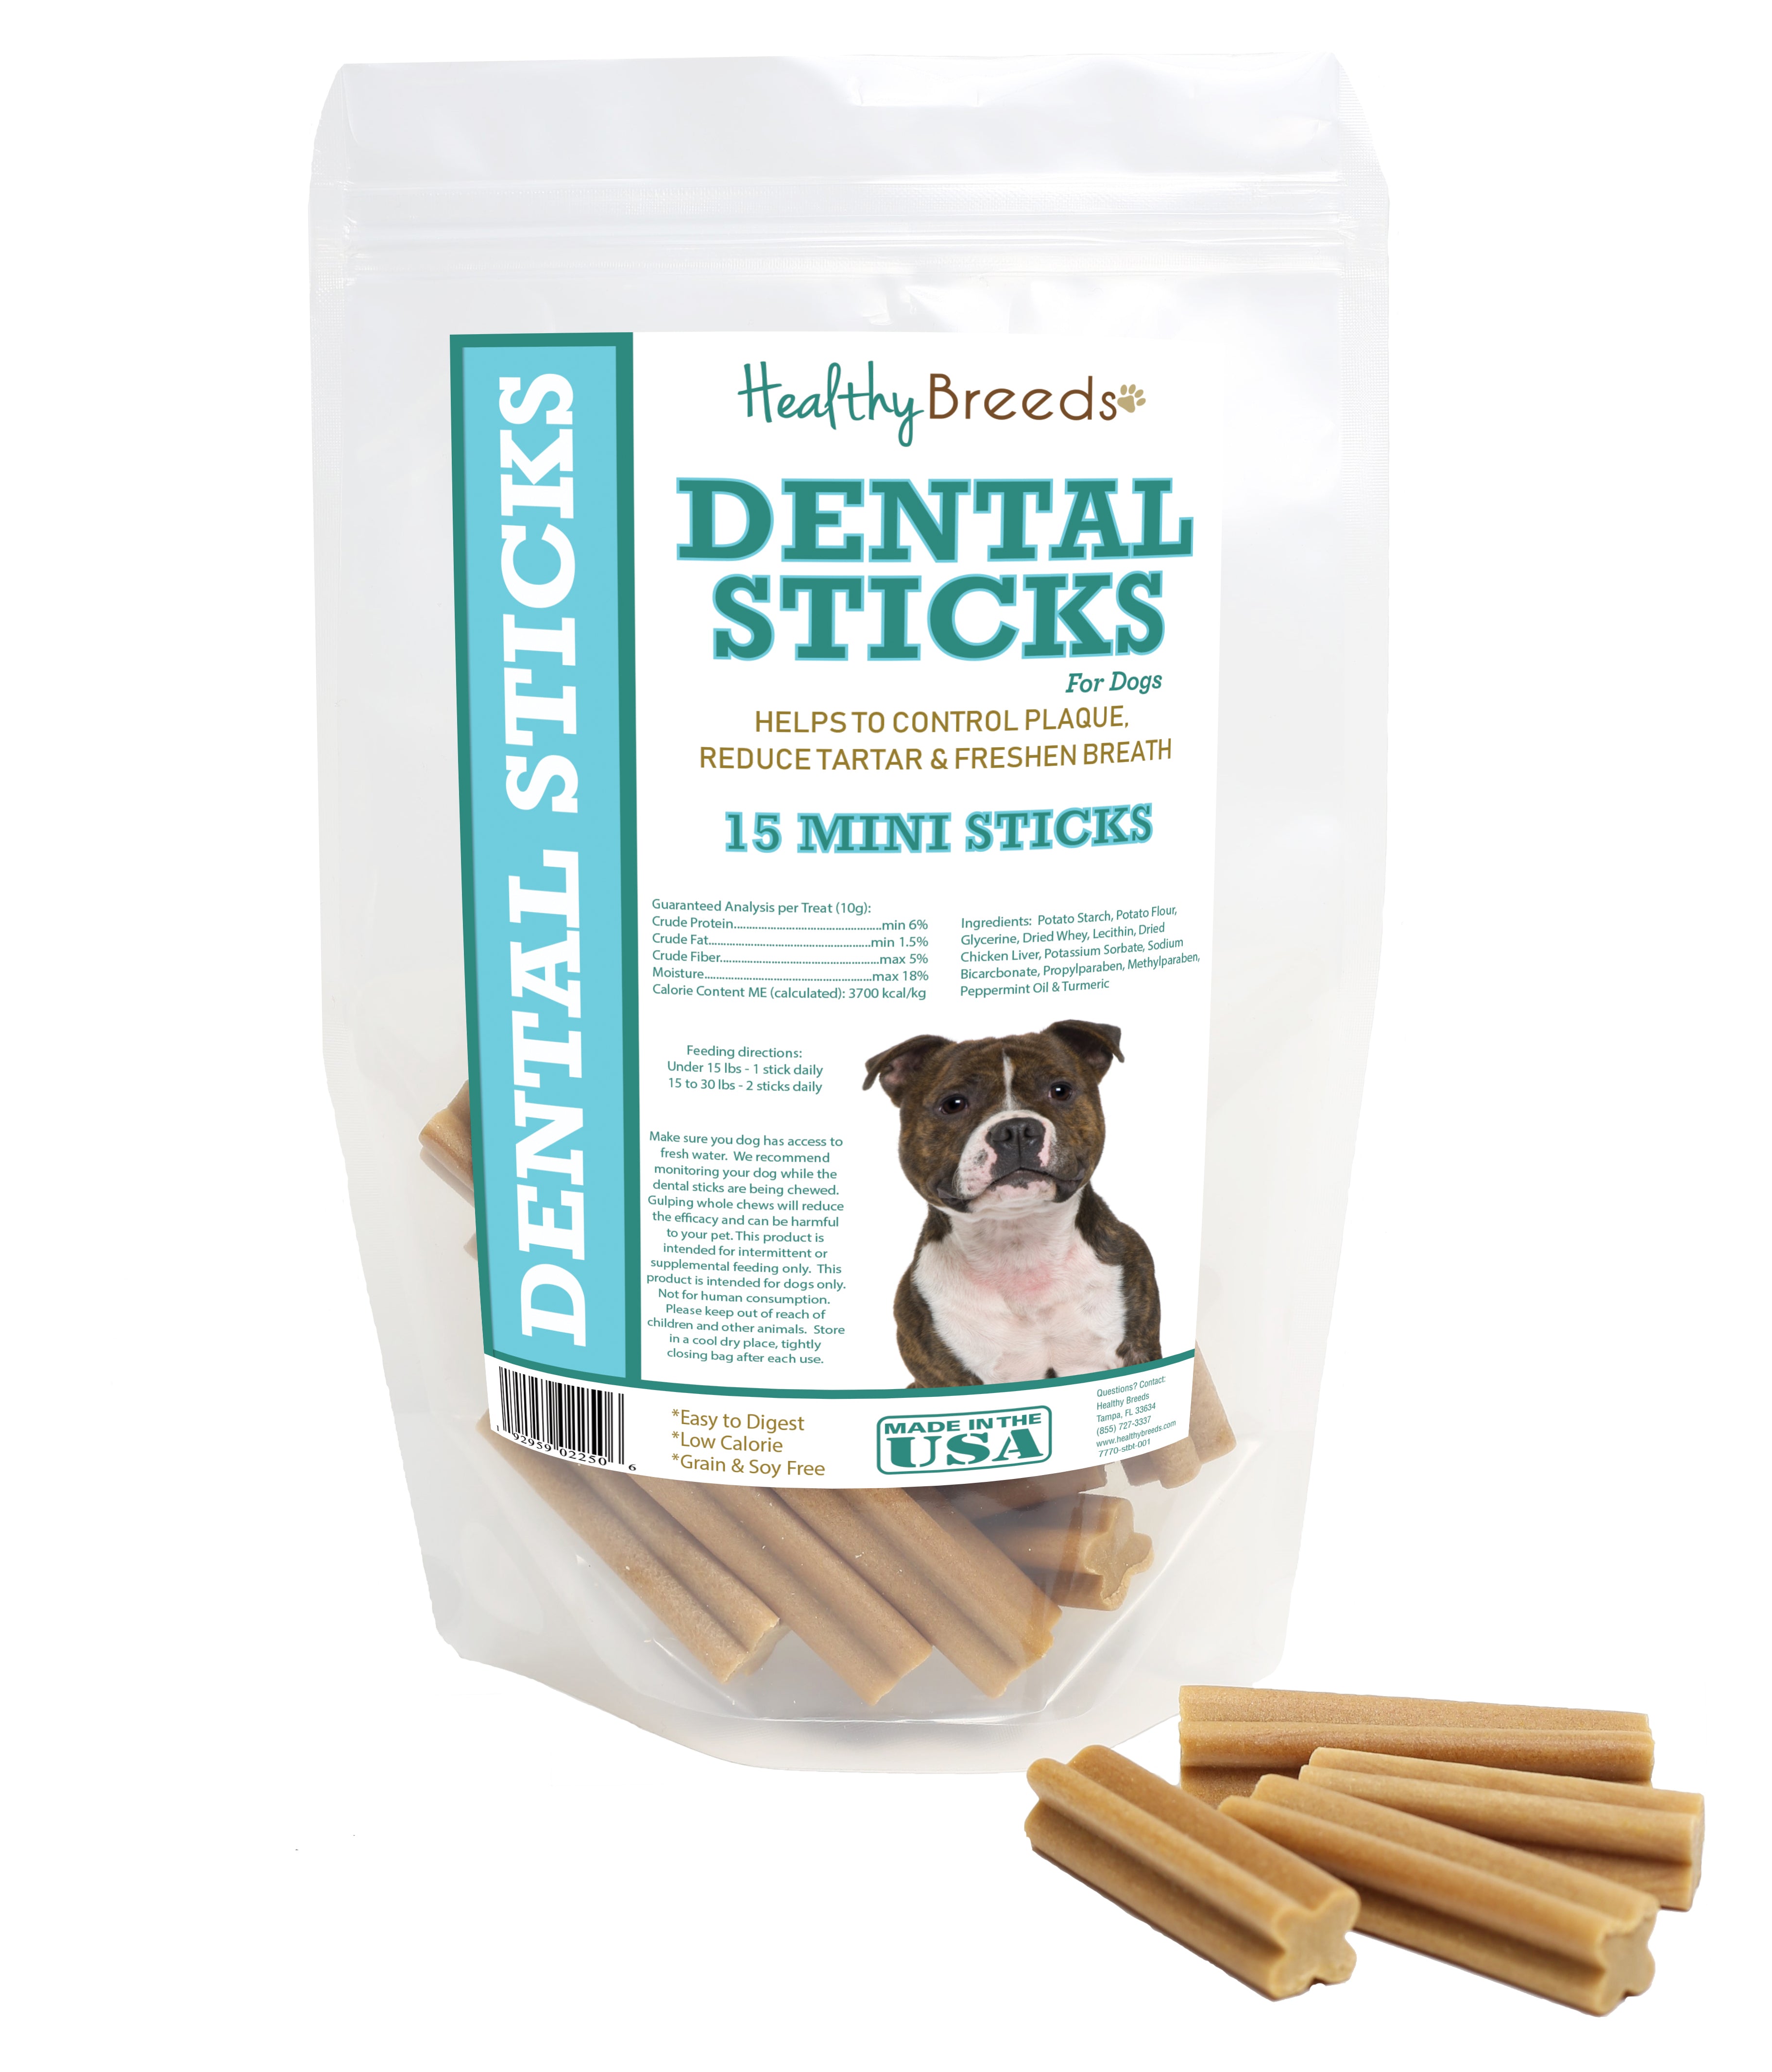 Staffordshire Bull Terrier Dental Sticks Minis 15 Count